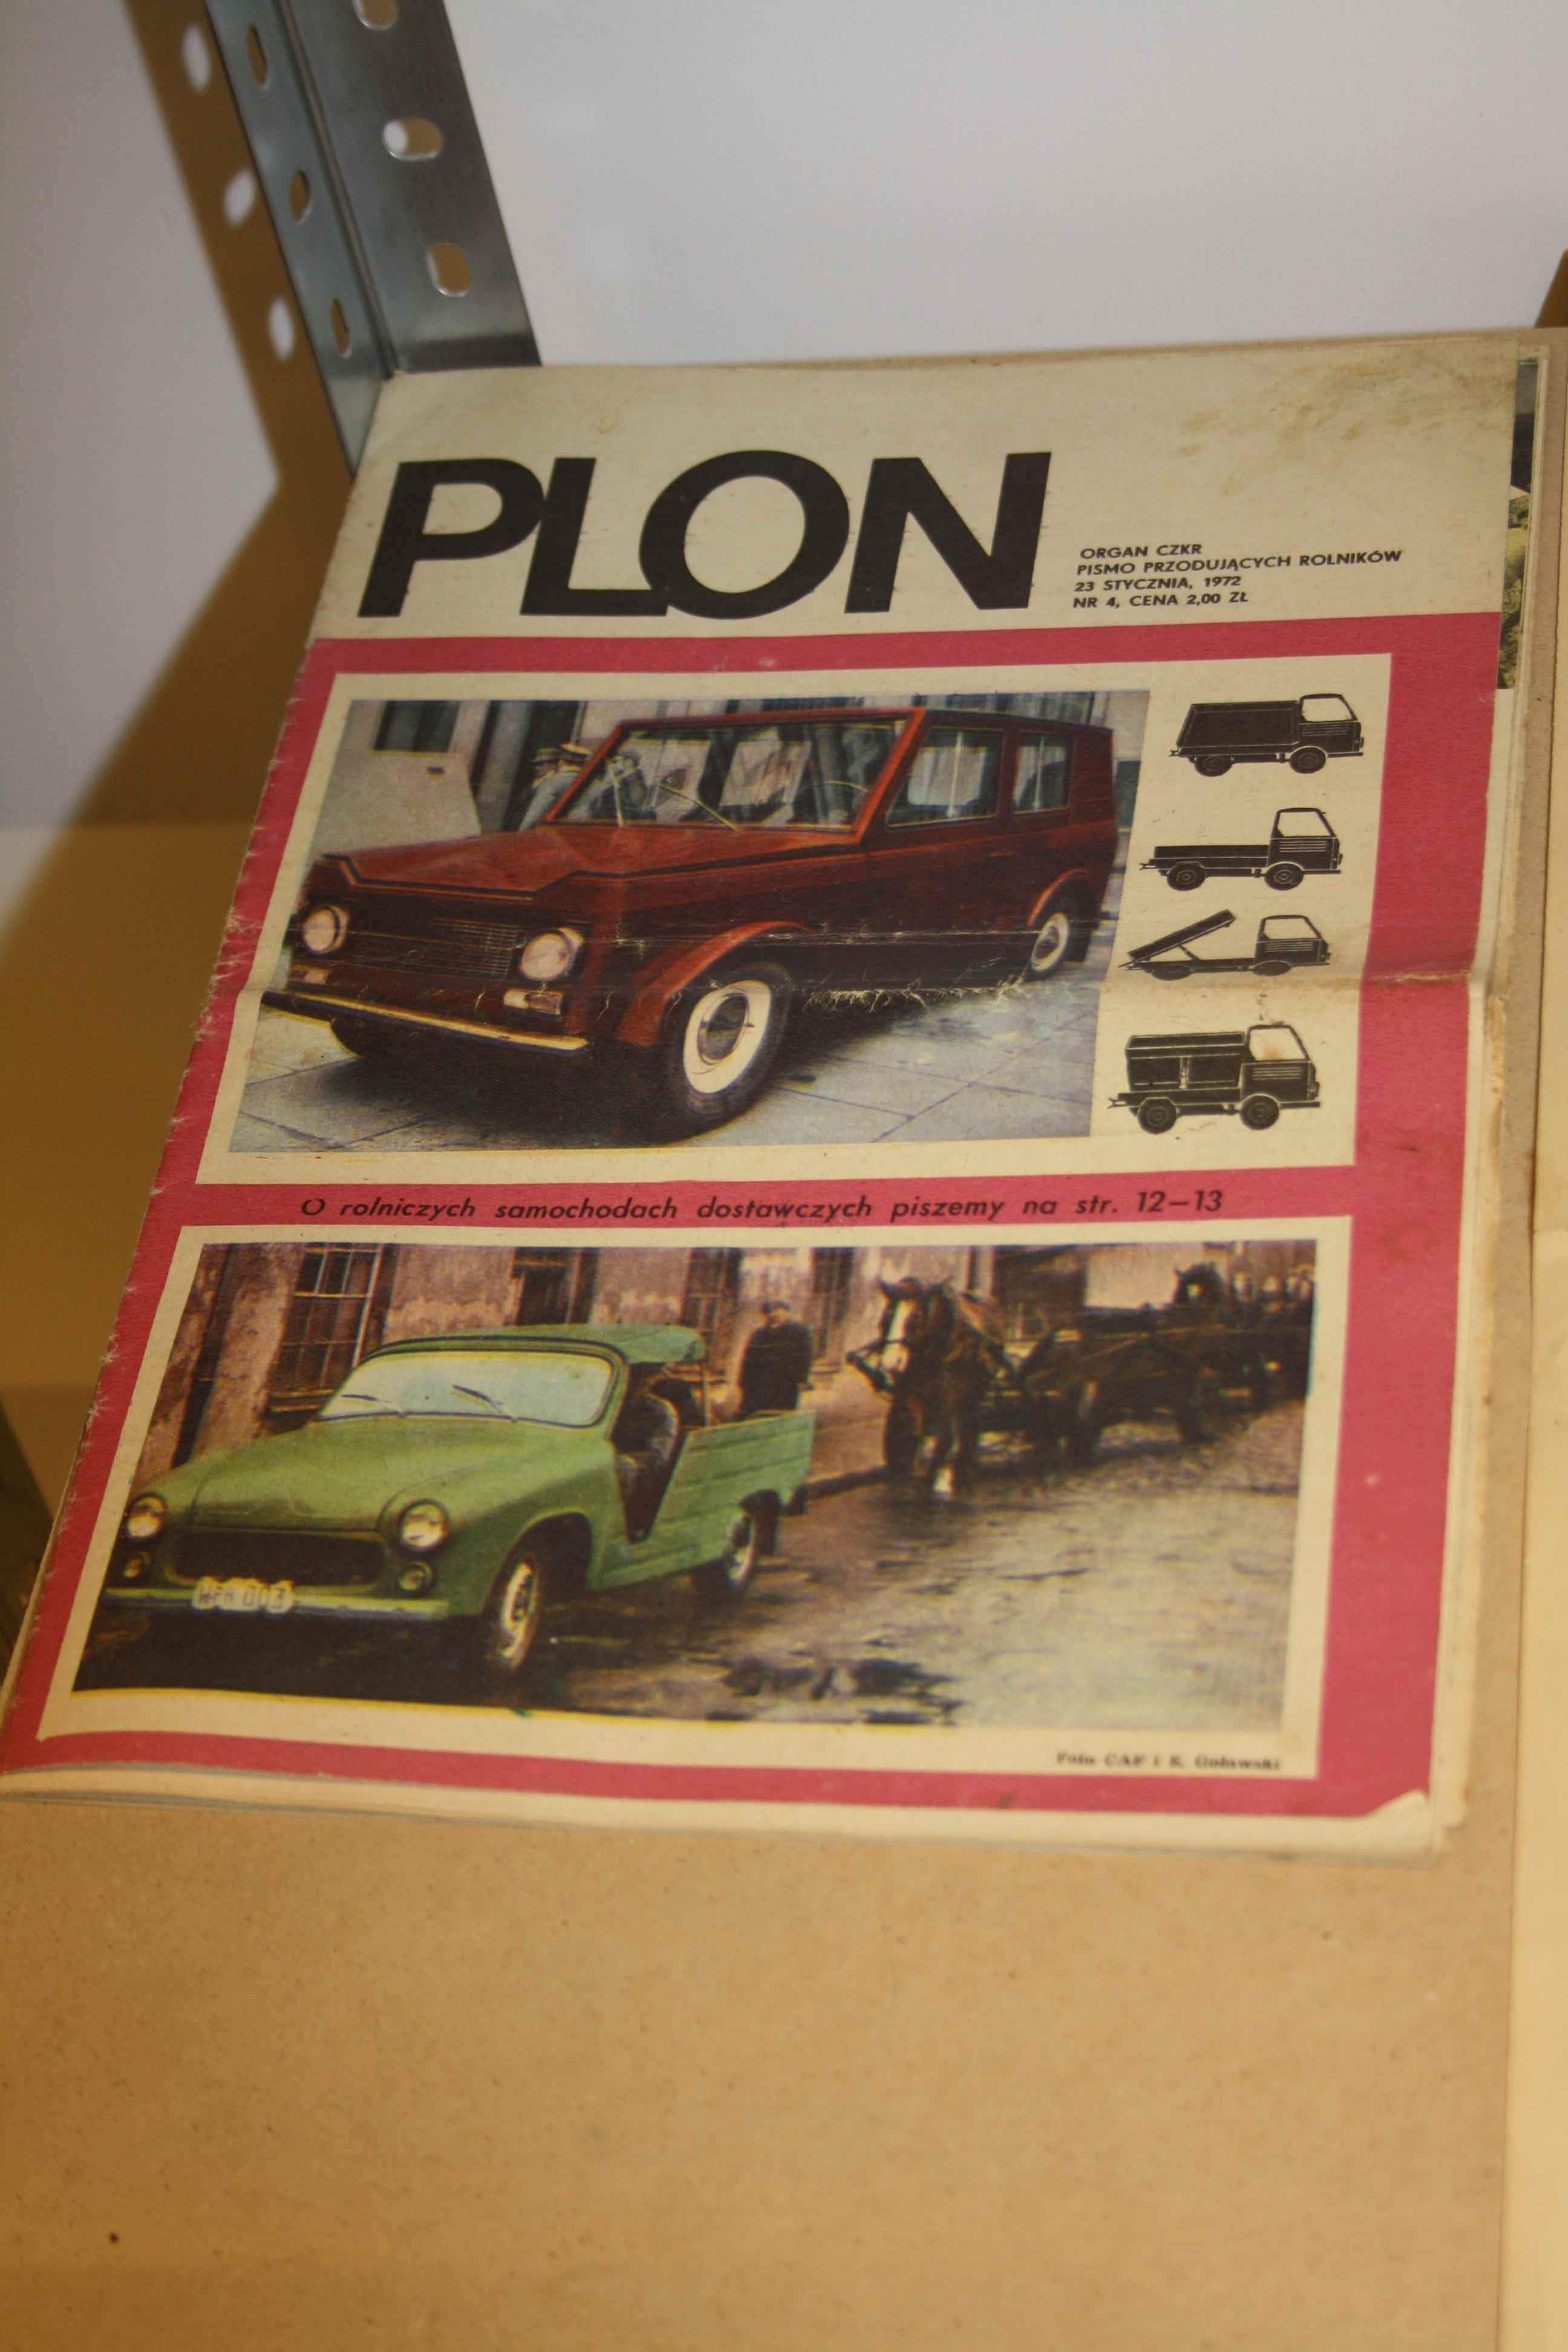 Wśród muzealnych eksponatów jest m.in. numer czasopisma „Plon” z 1972 roku, który poświęcony był rolniczym samochodom dostawczym